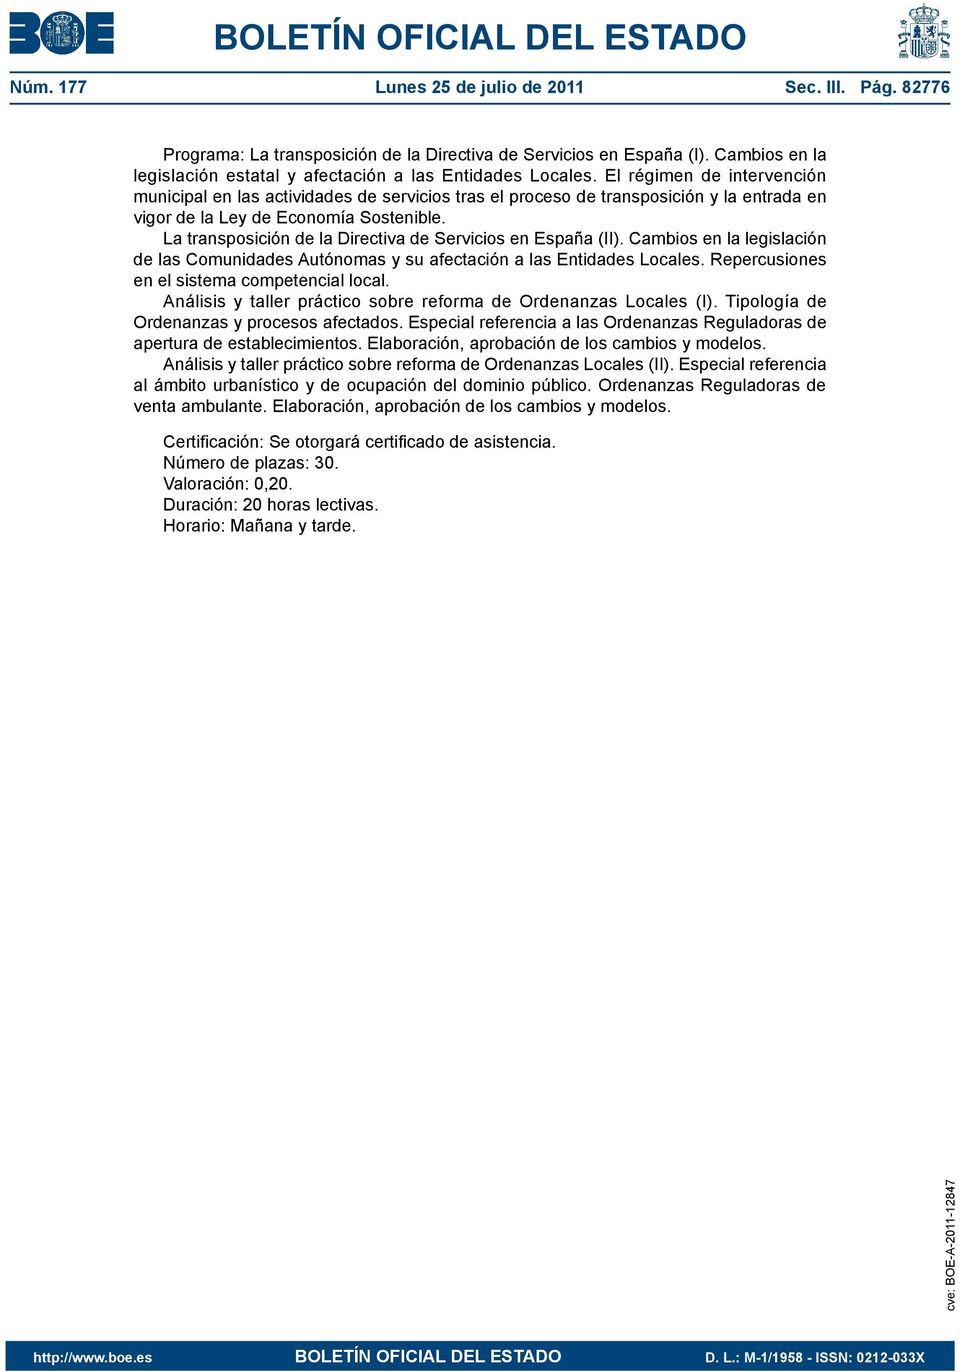 La transposición de la Directiva de Servicios en España (II). Cambios en la legislación de las Comunidades Autónomas y su afectación a las Entidades Locales.